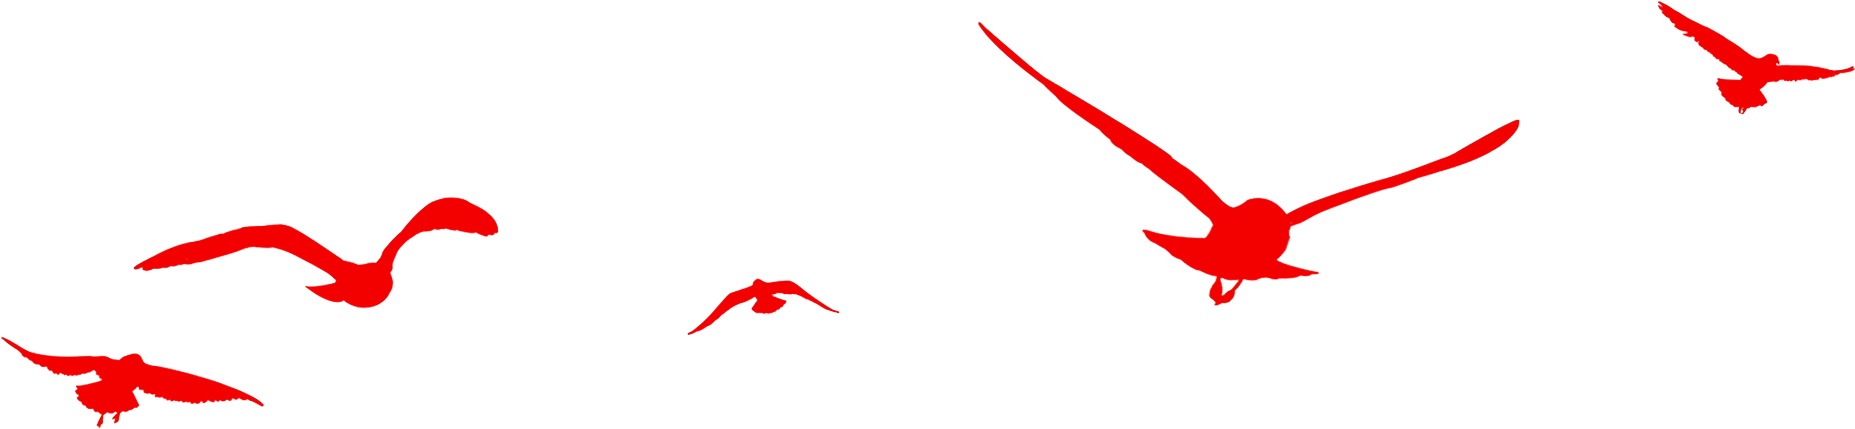 Red Birds Flying - 飛鳥 剪影 (1882x516)